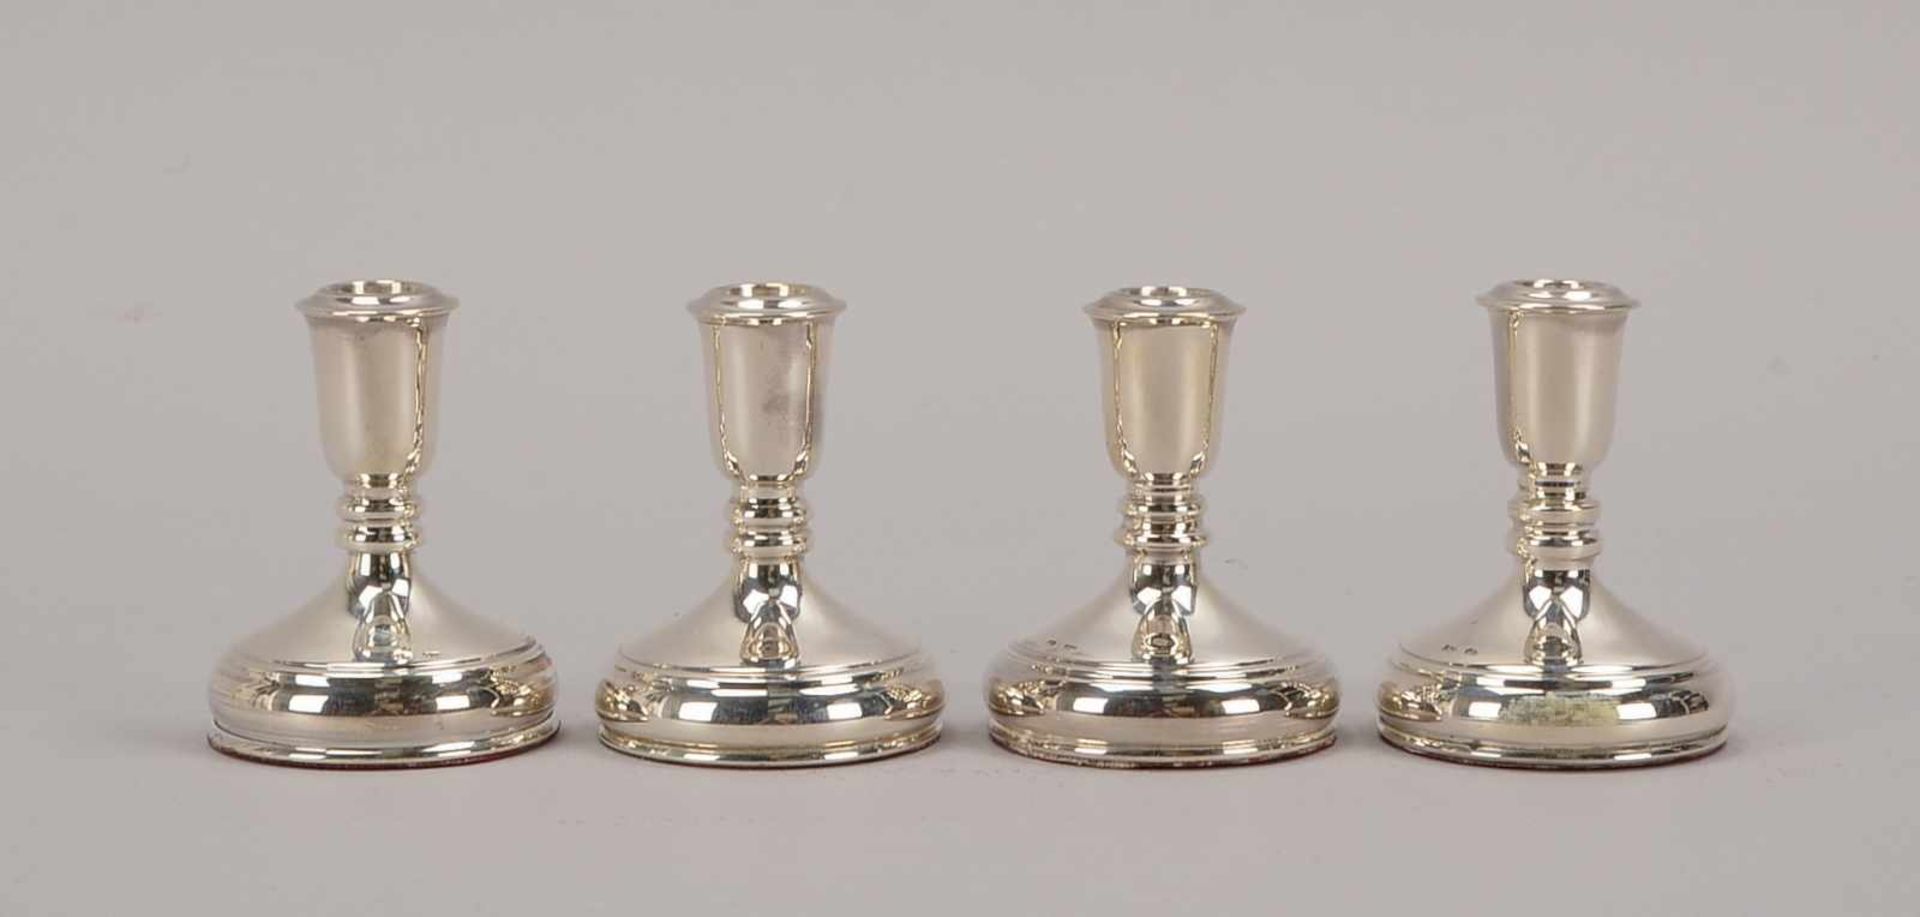 Satz kleiner Kerzenleuchter, 925 Silber (leicht gefüllt), 4 Stück; Höhe 6,8 cm